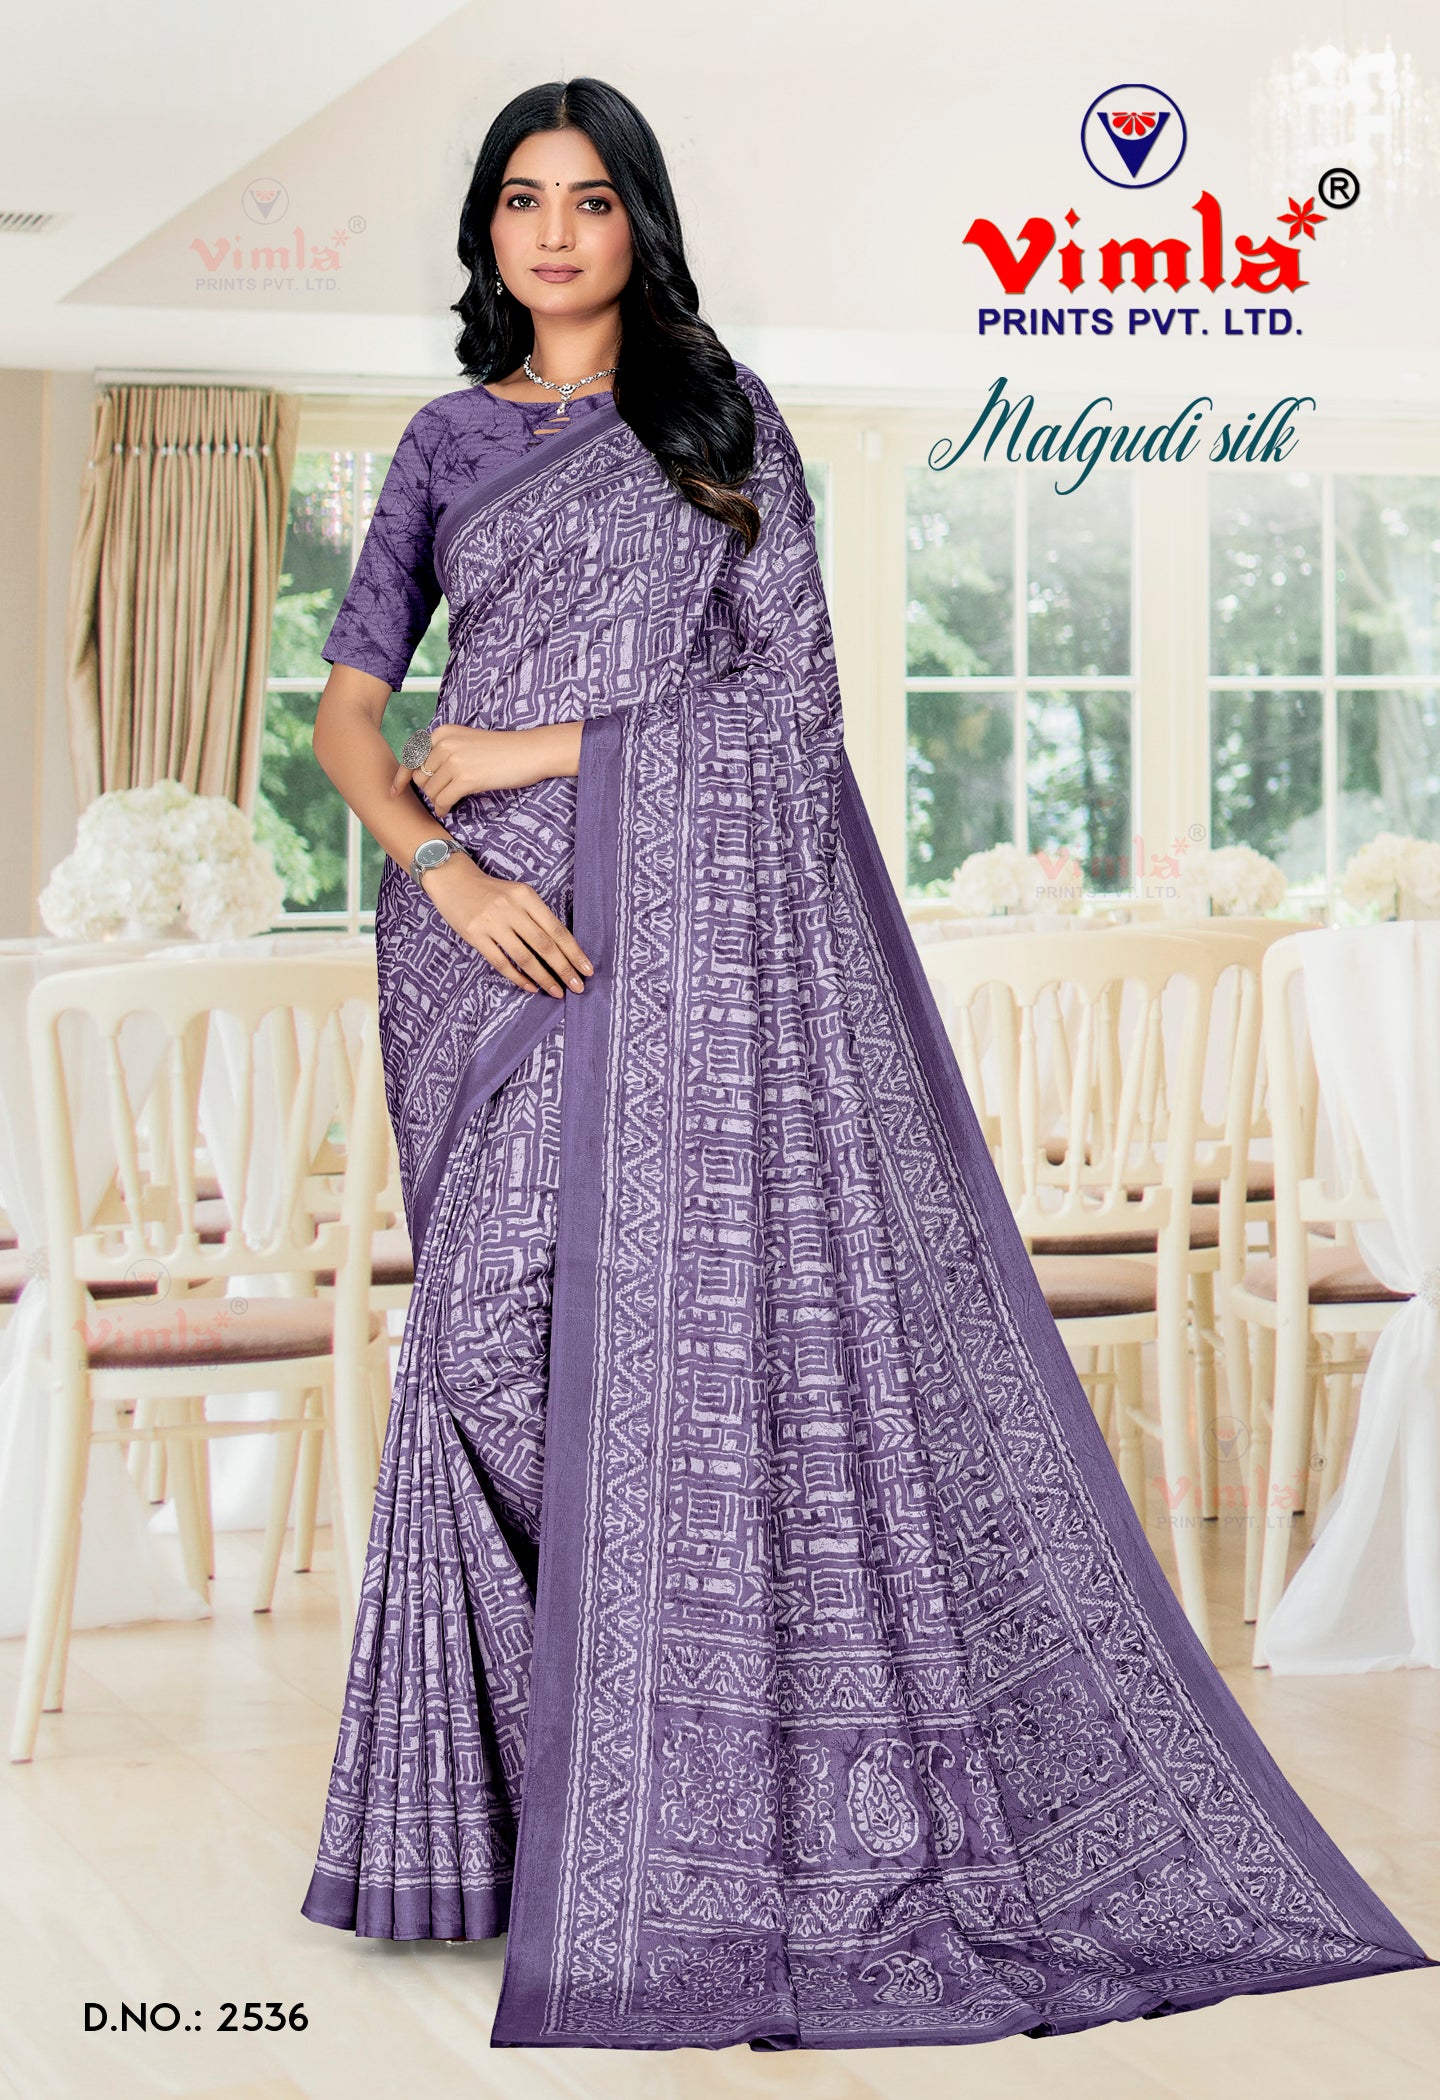 Vimla Women's Purple Malgudi Art Silk Uniform Saree with Blouse Piece (2536_25)